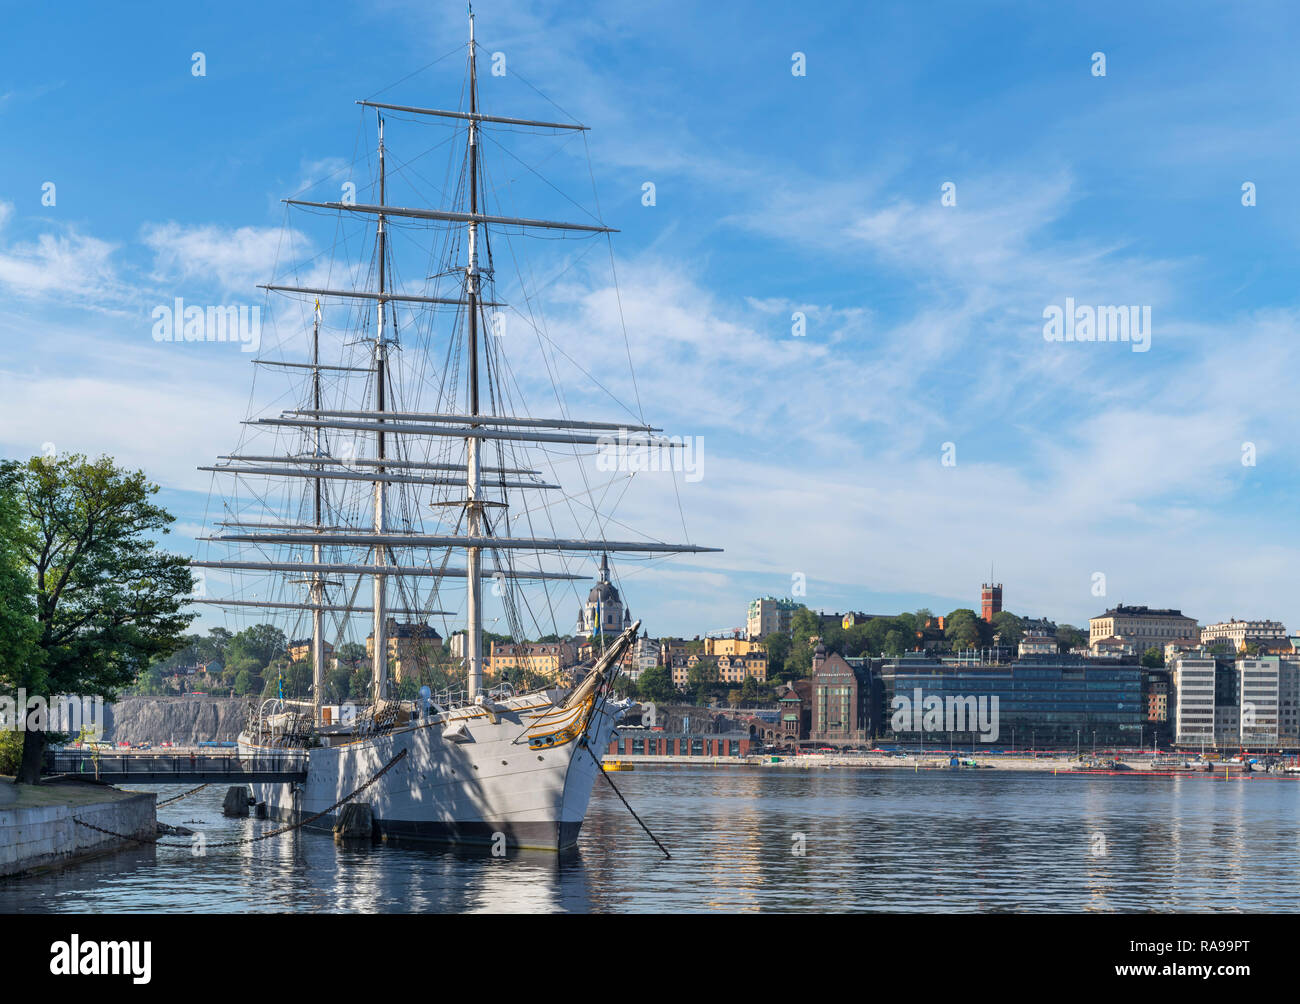 L'af Chapman full rigged navire à voile, maintenant une auberge de jeunesse, Skeppsholmen à vers Stadsholmen, Stockholm, Suède Banque D'Images